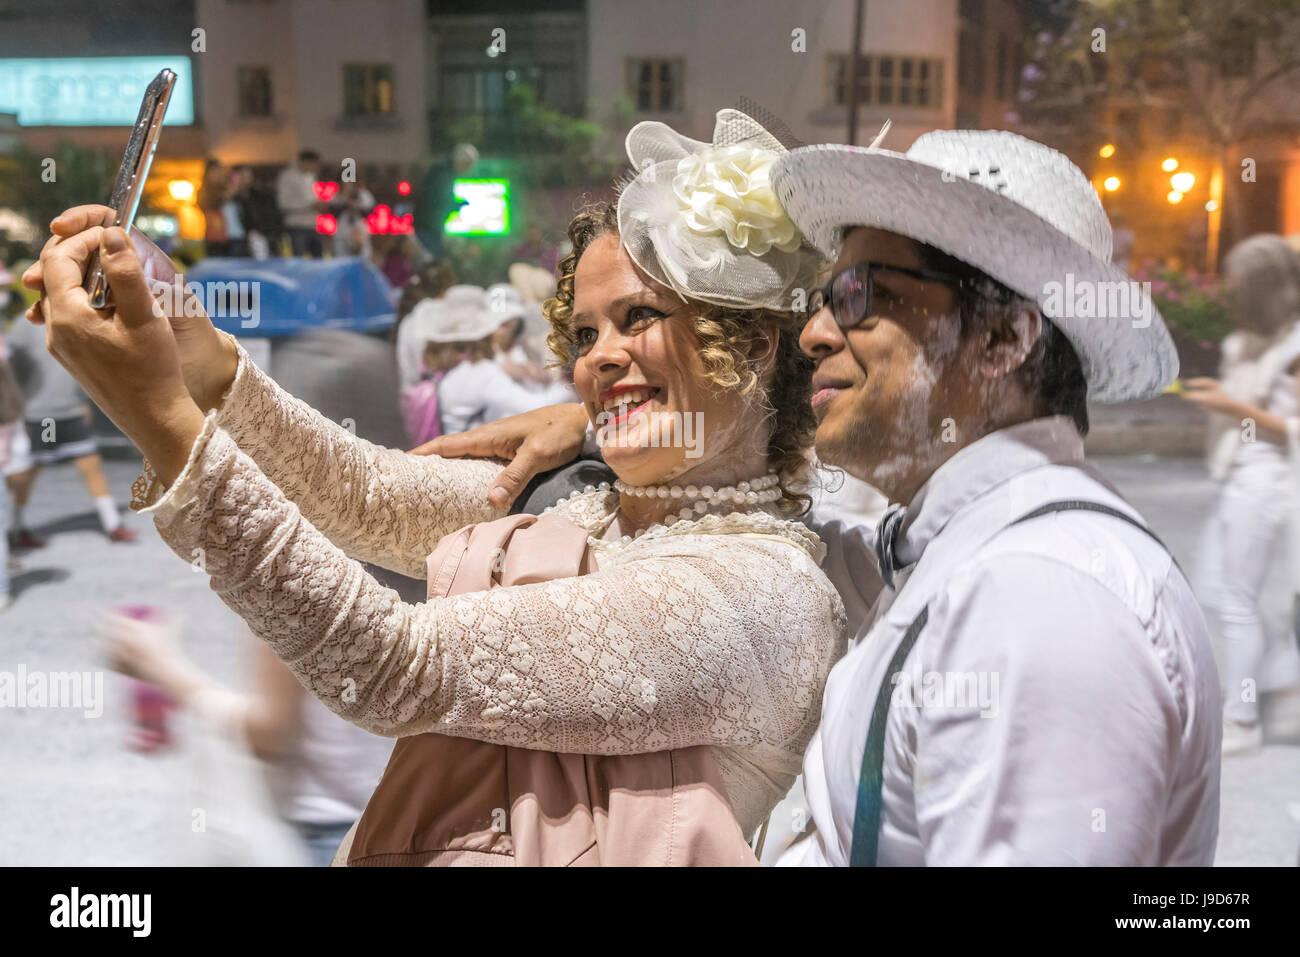 Weisses Pulver und weisse Kleidung beim Karneval La fiesta de los Indianos, Las Palmas de Gran Canaria, Kanarische Inseln, Spanien |  Los Indianos car Stock Photo